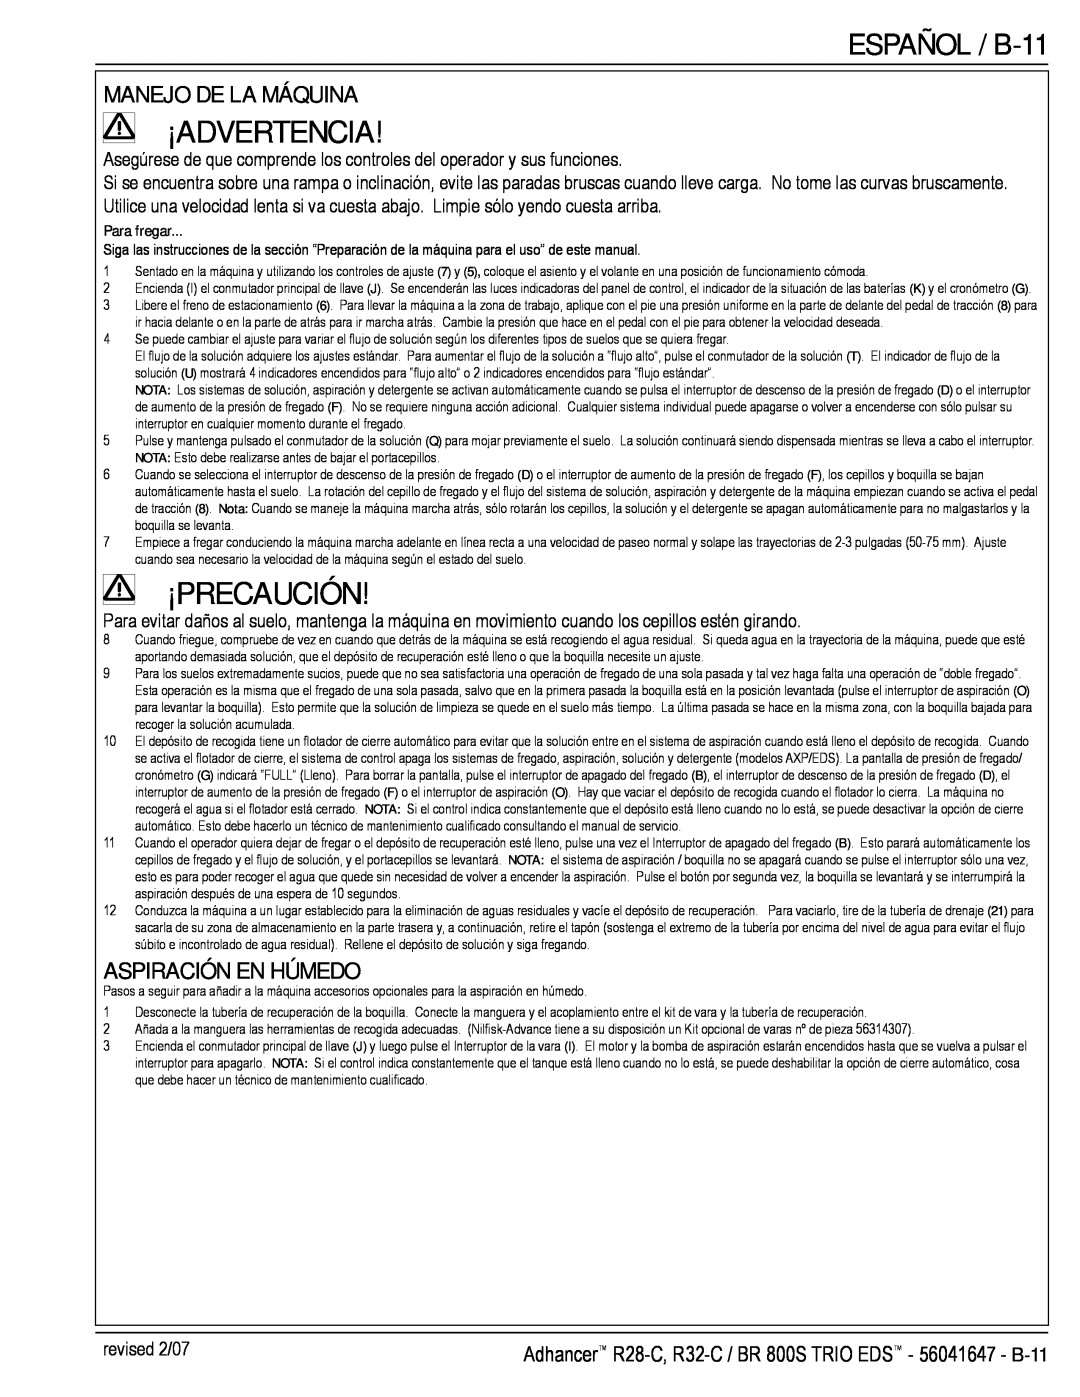 Nilfisk-Advance America 56316025 (R32-C) manual ESPAÑOL / B-11, Manejo De La Máquina, Aspiración En Húmedo, ¡Advertencia 